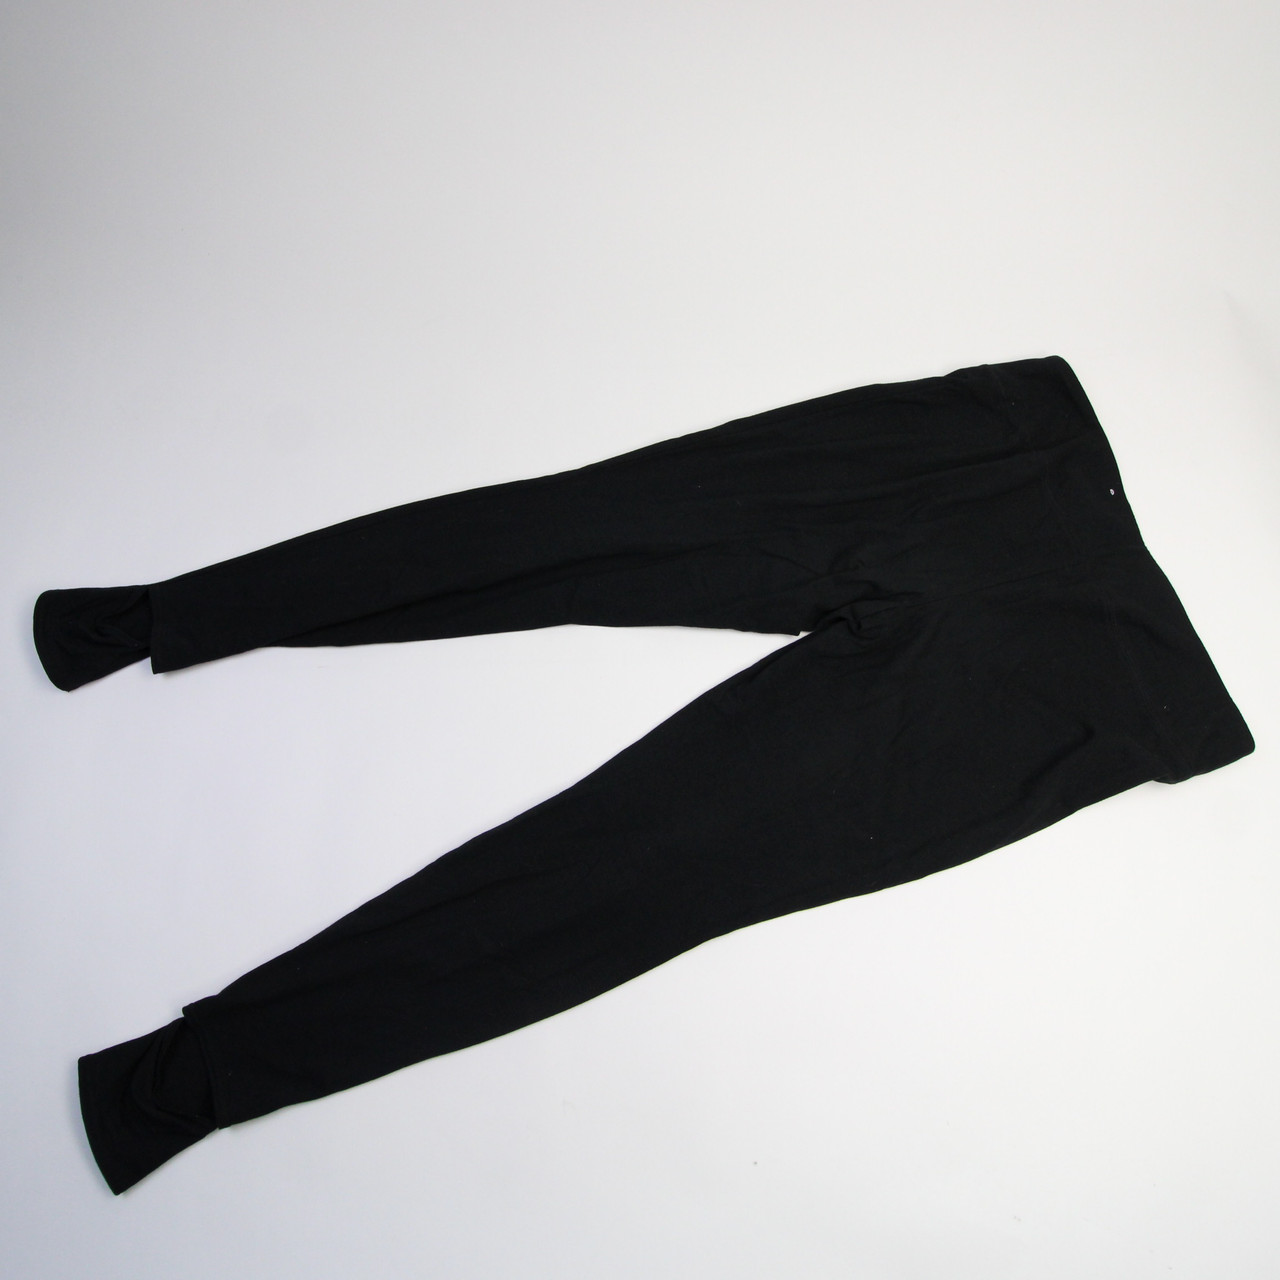 Mossimo basic black leggings  Basic black leggings, Black leggings,  Leggings